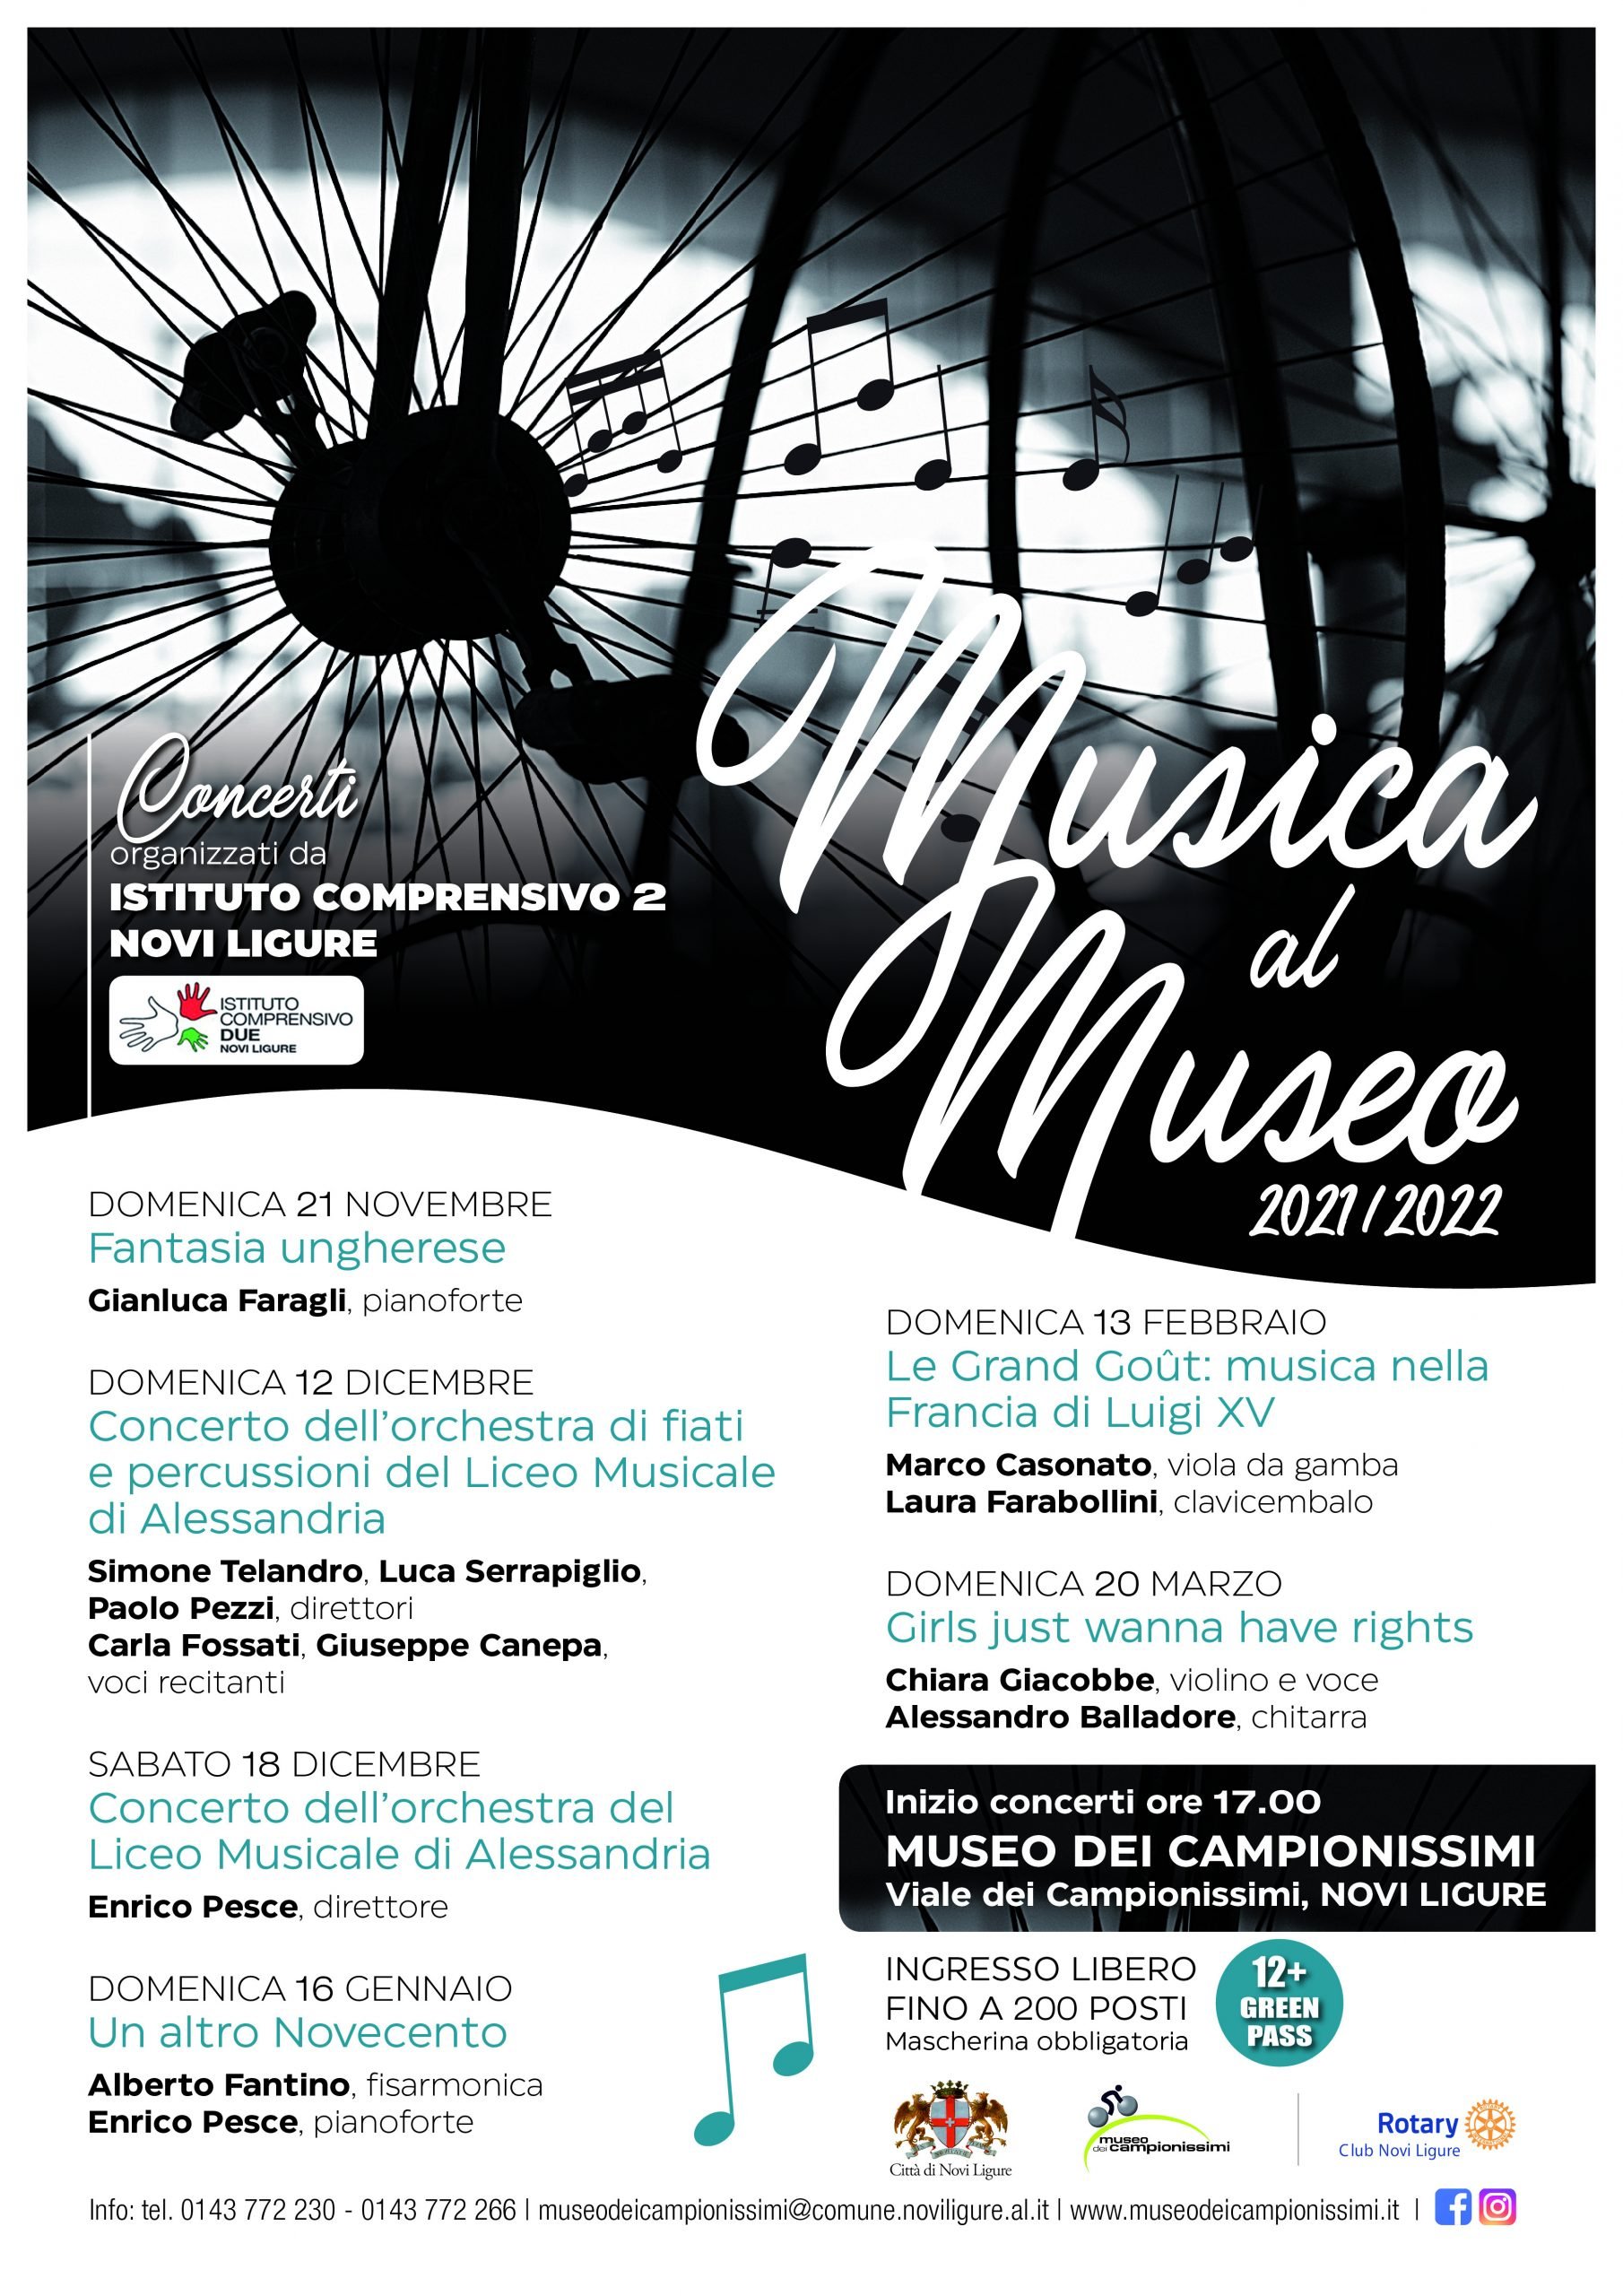 Il 18 dicembre l’Orchestra del Liceo Musicale di Alessandria al Museo dei Campionissimi